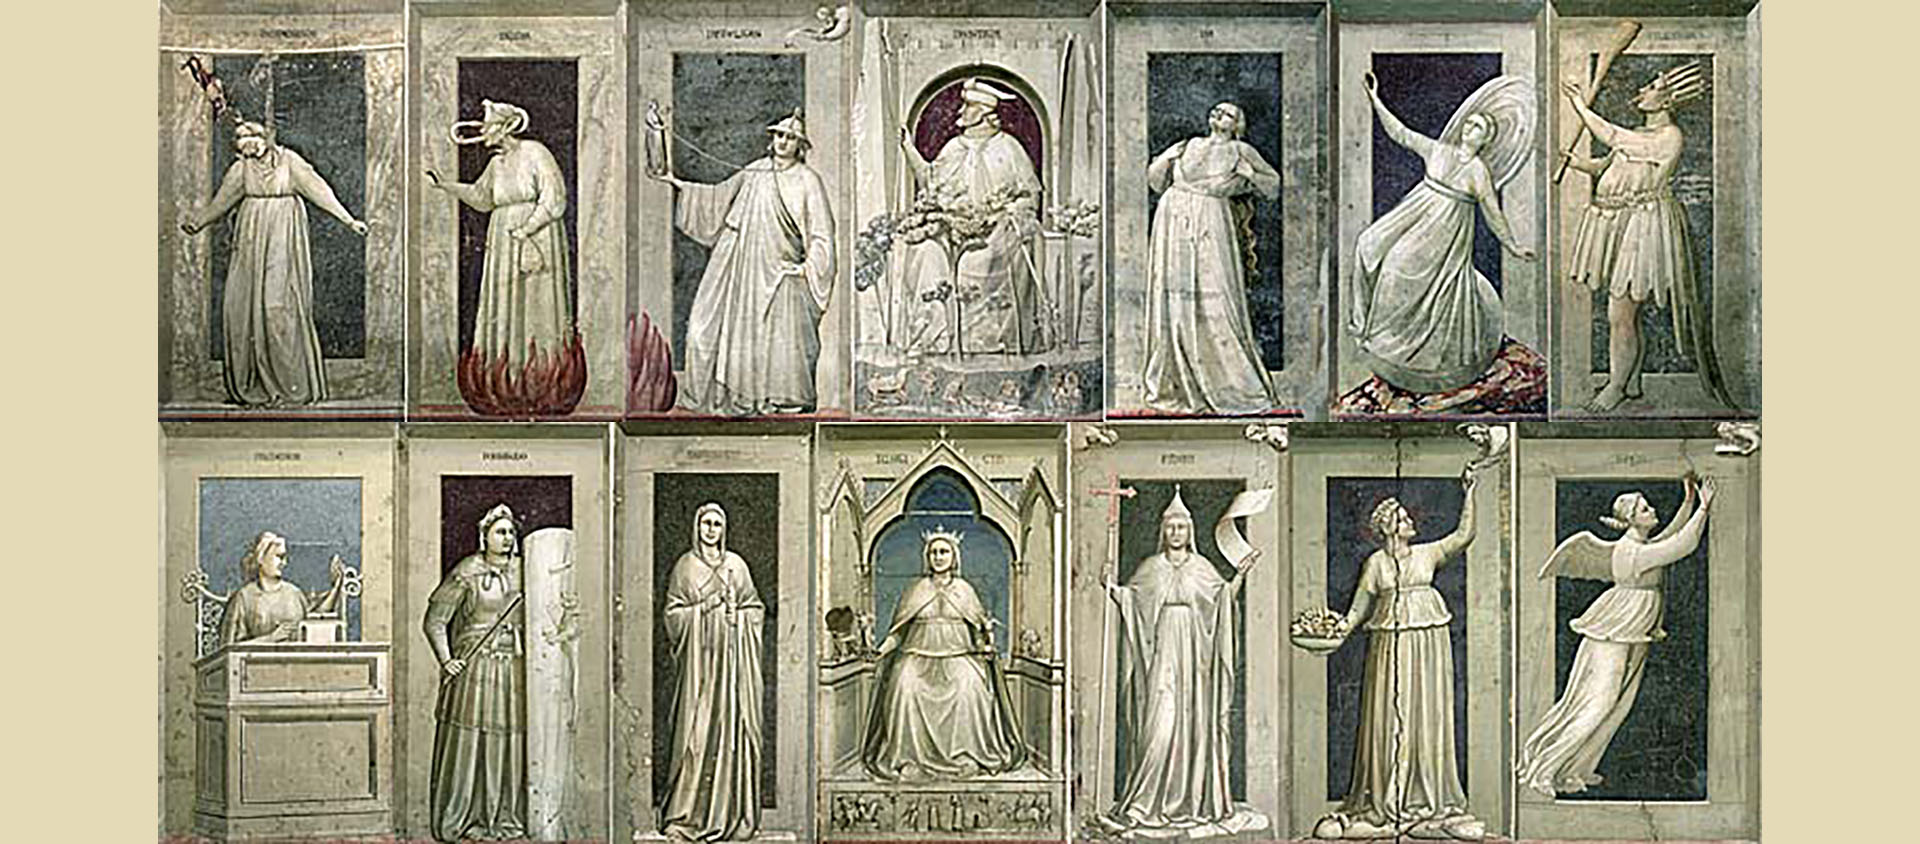  Les vices de la chapelle Scrovegni de Padoue par Giotto, entre 1302 et 1306 | Domaine public